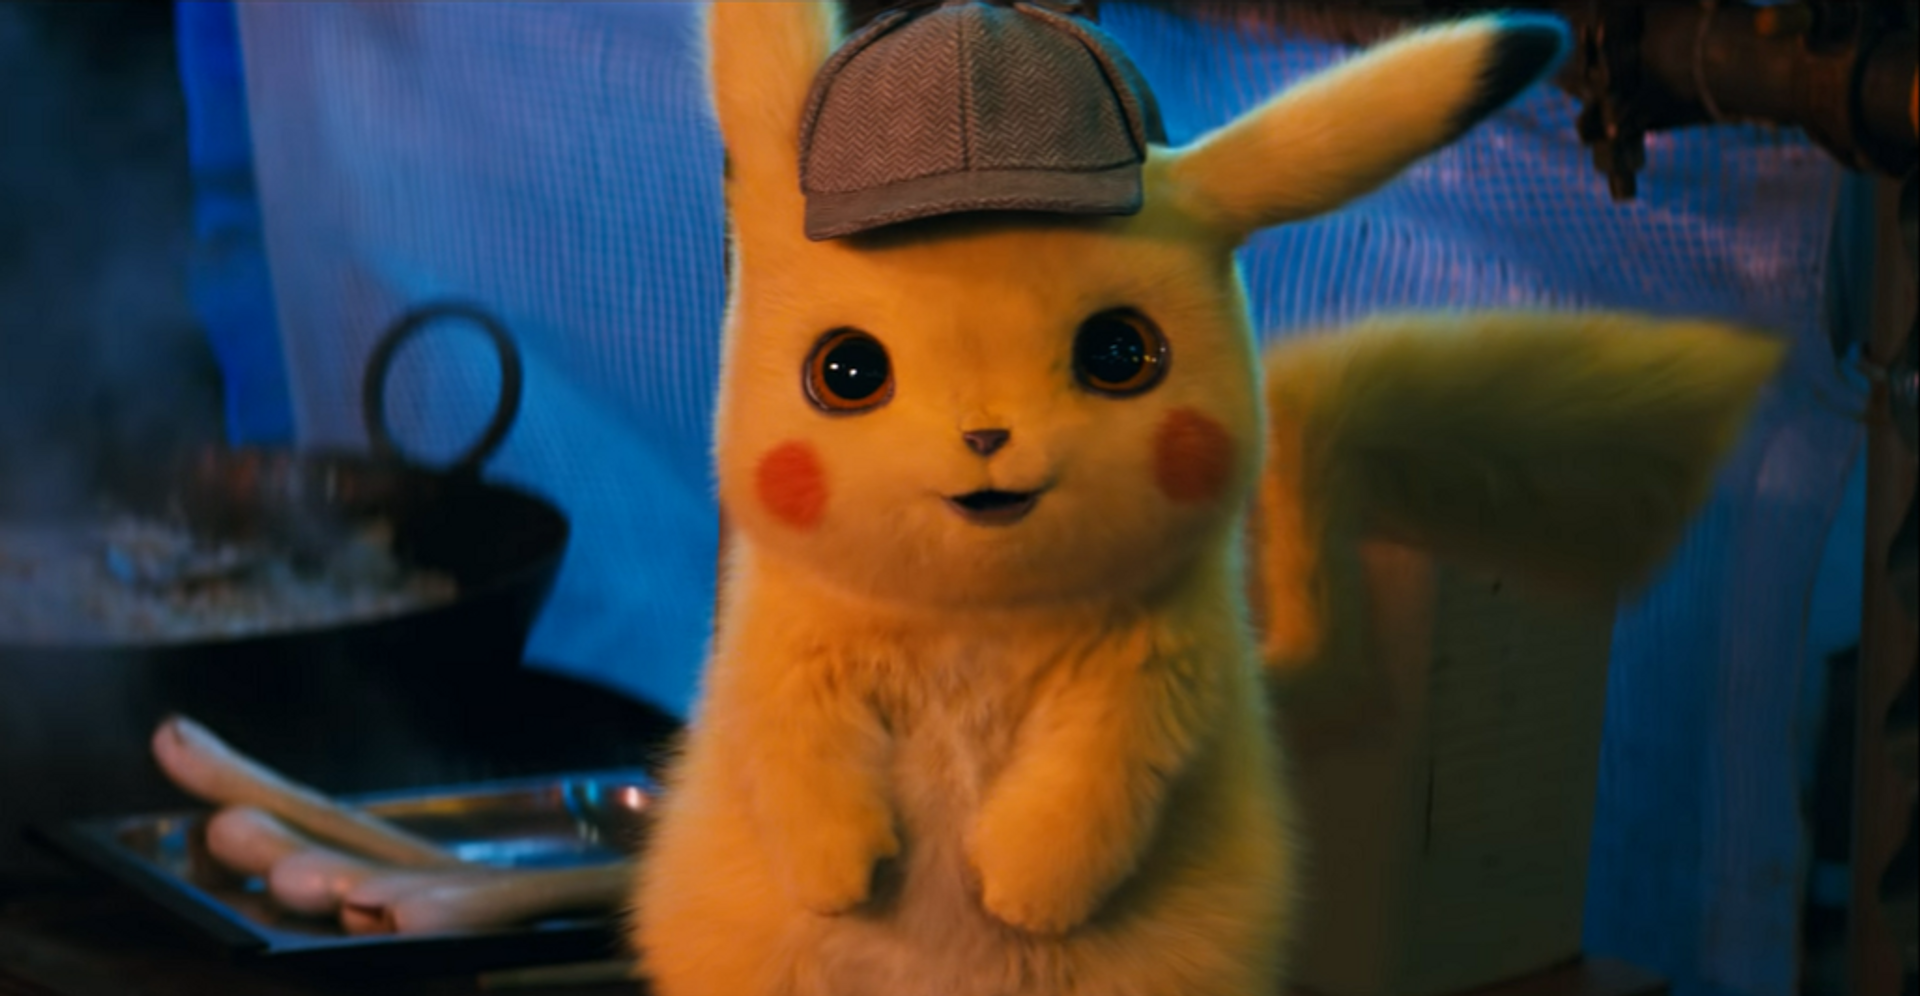 Pokémon detective pikache ryan reynolds gewoonvoorhem header